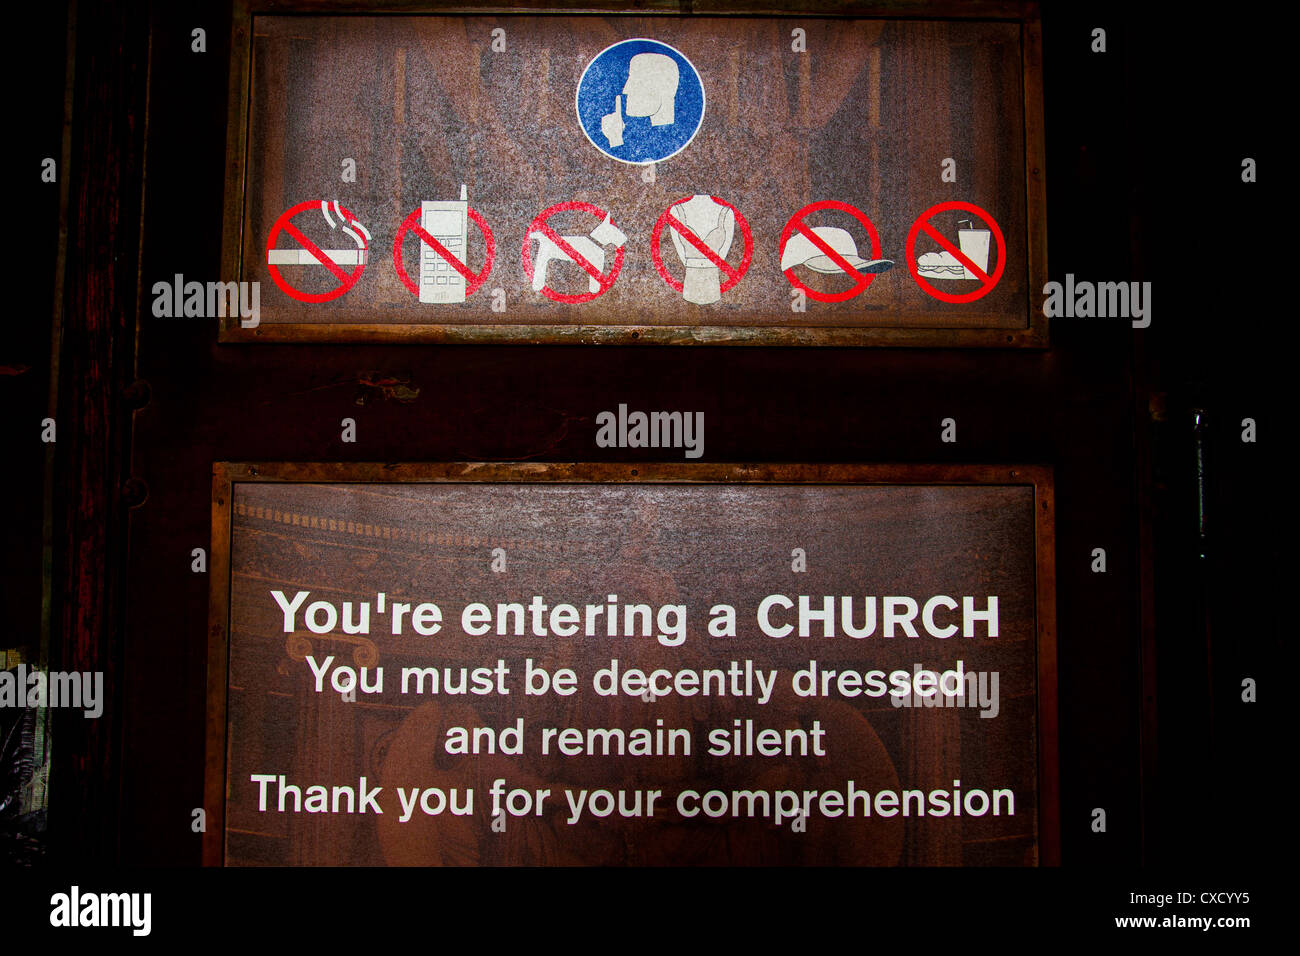 Melden Sie sich an der Haustür einer Kirche in Paris skizziert die Beschränkungen auf die Besucher. Stockfoto